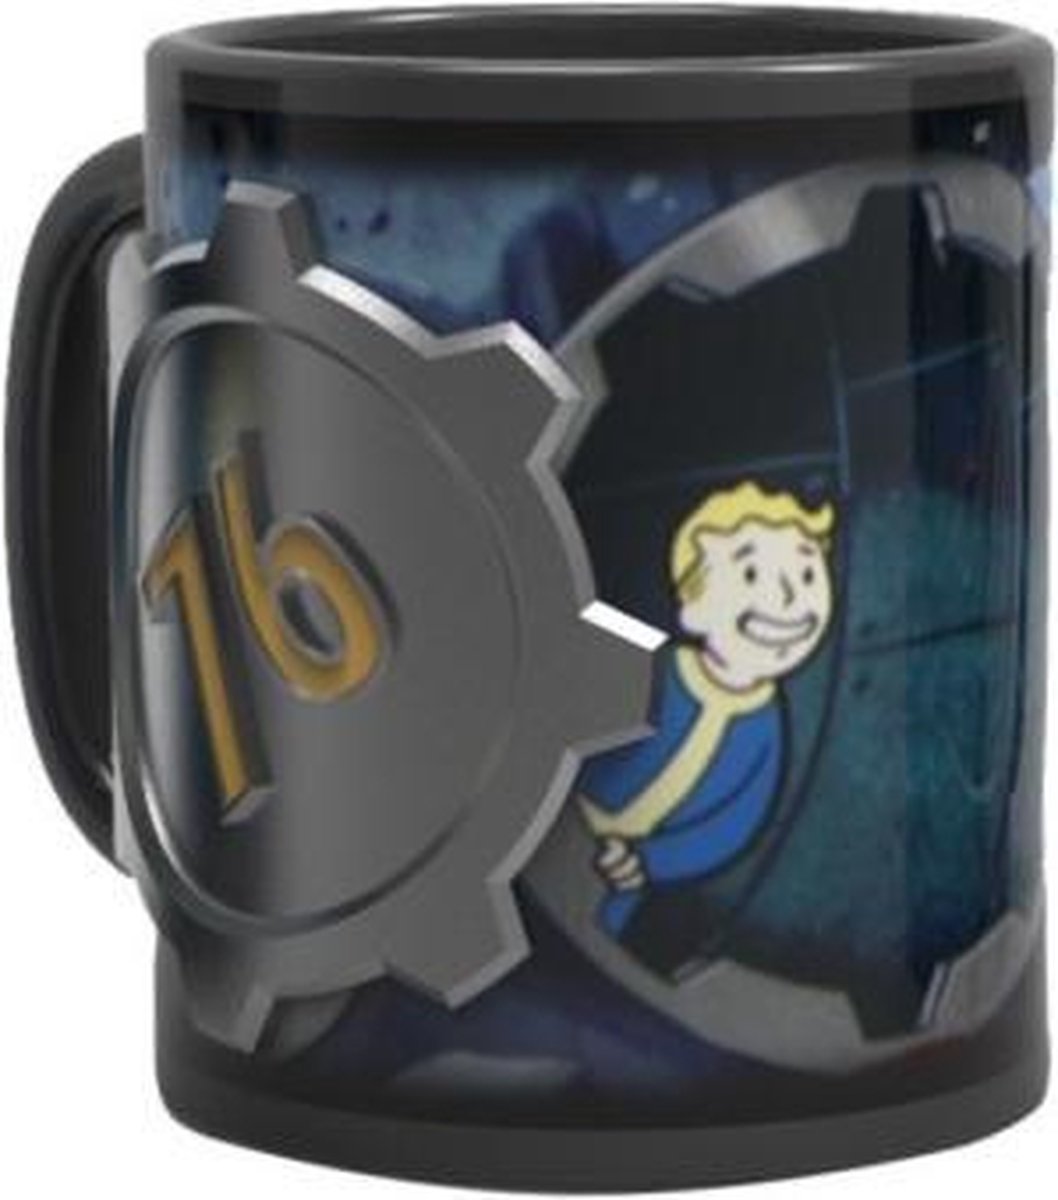 Fallout 76 Vault 76 3D Mug